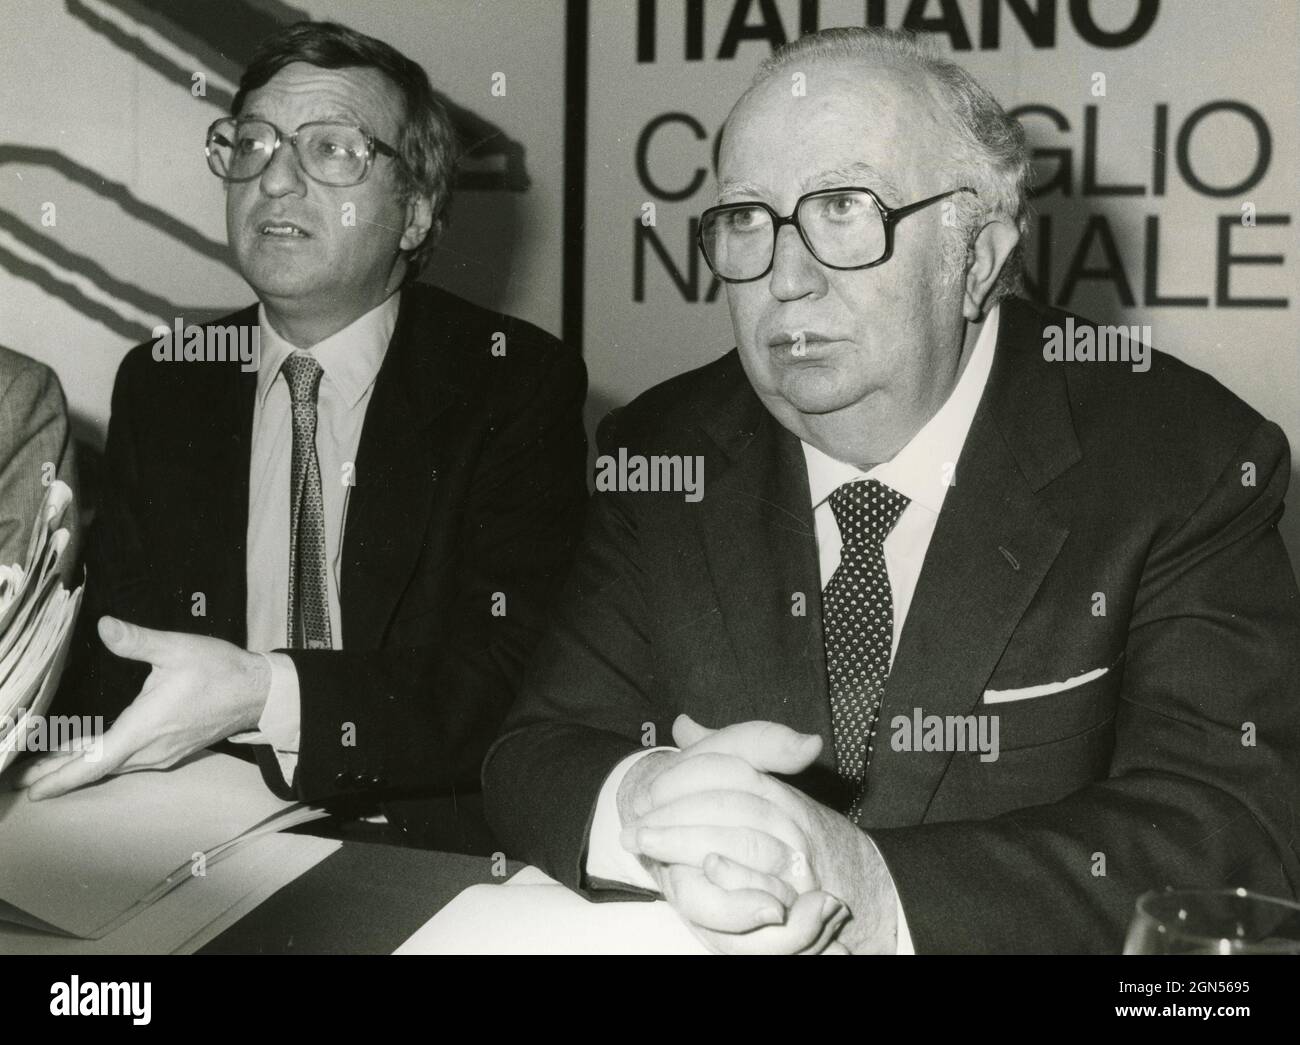 Homme politique et homme d'État italien Giovanni Spadolini et Giorgio la Malfa, années 1980 Banque D'Images